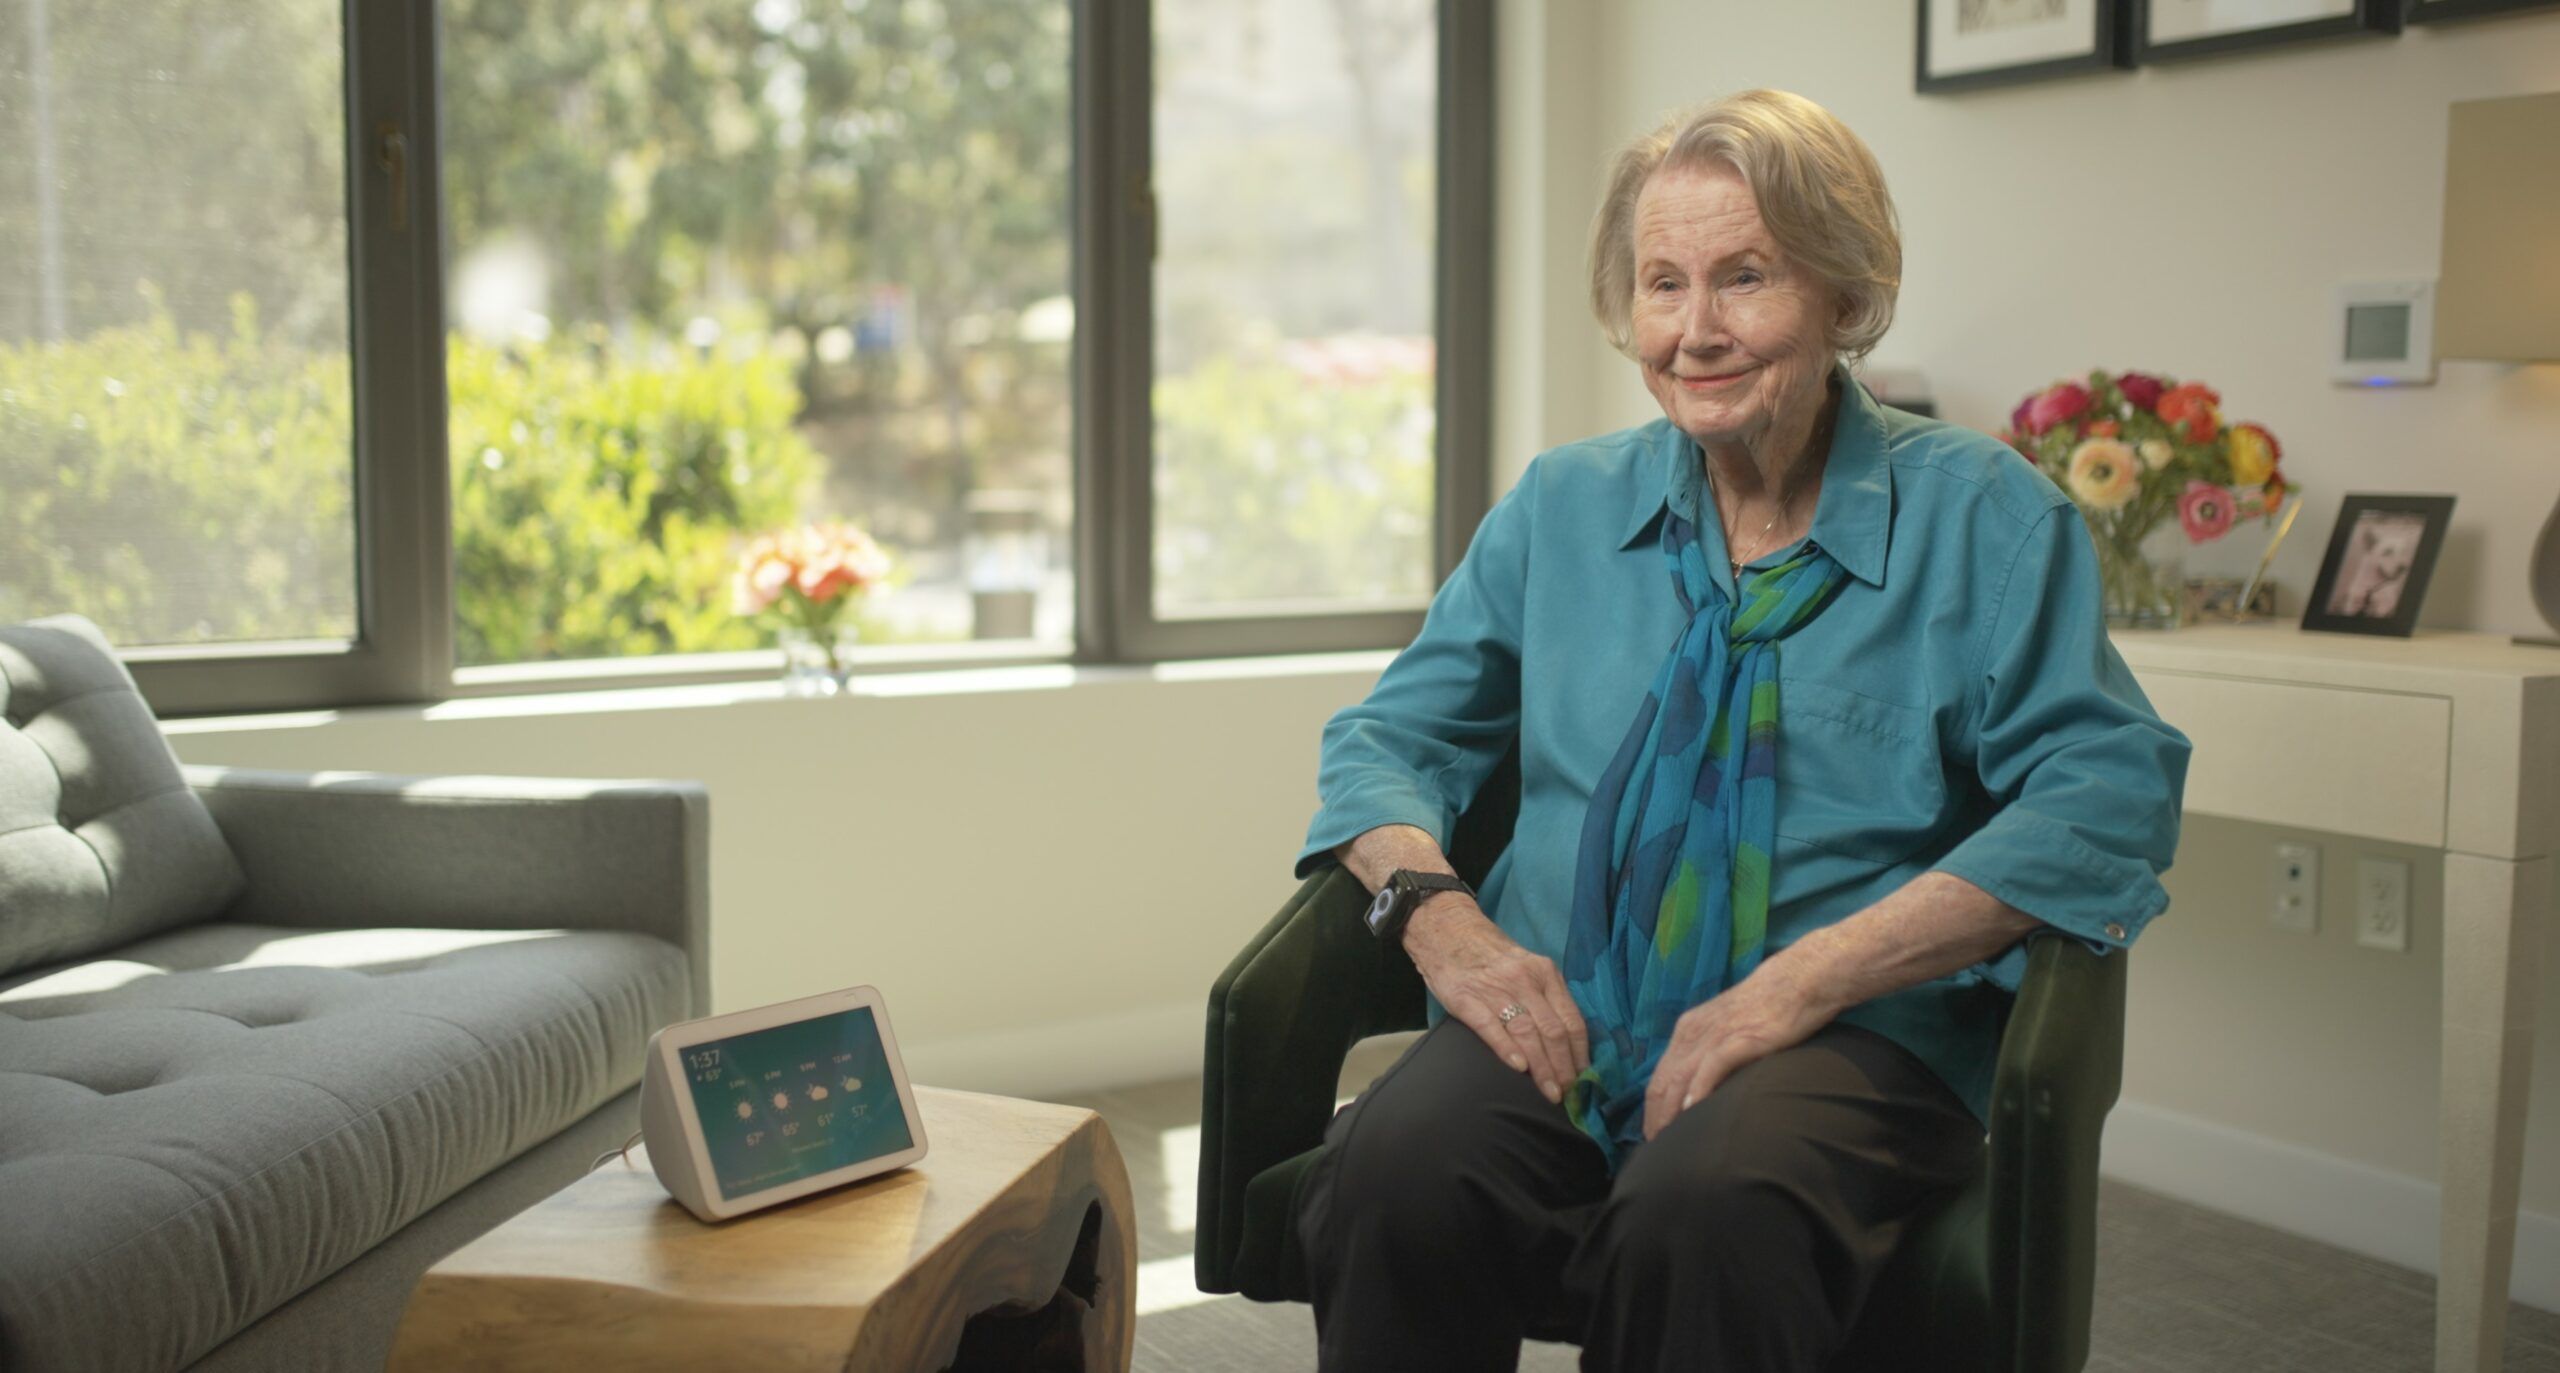 Senior woman sitting next to an Amazon Alexa device